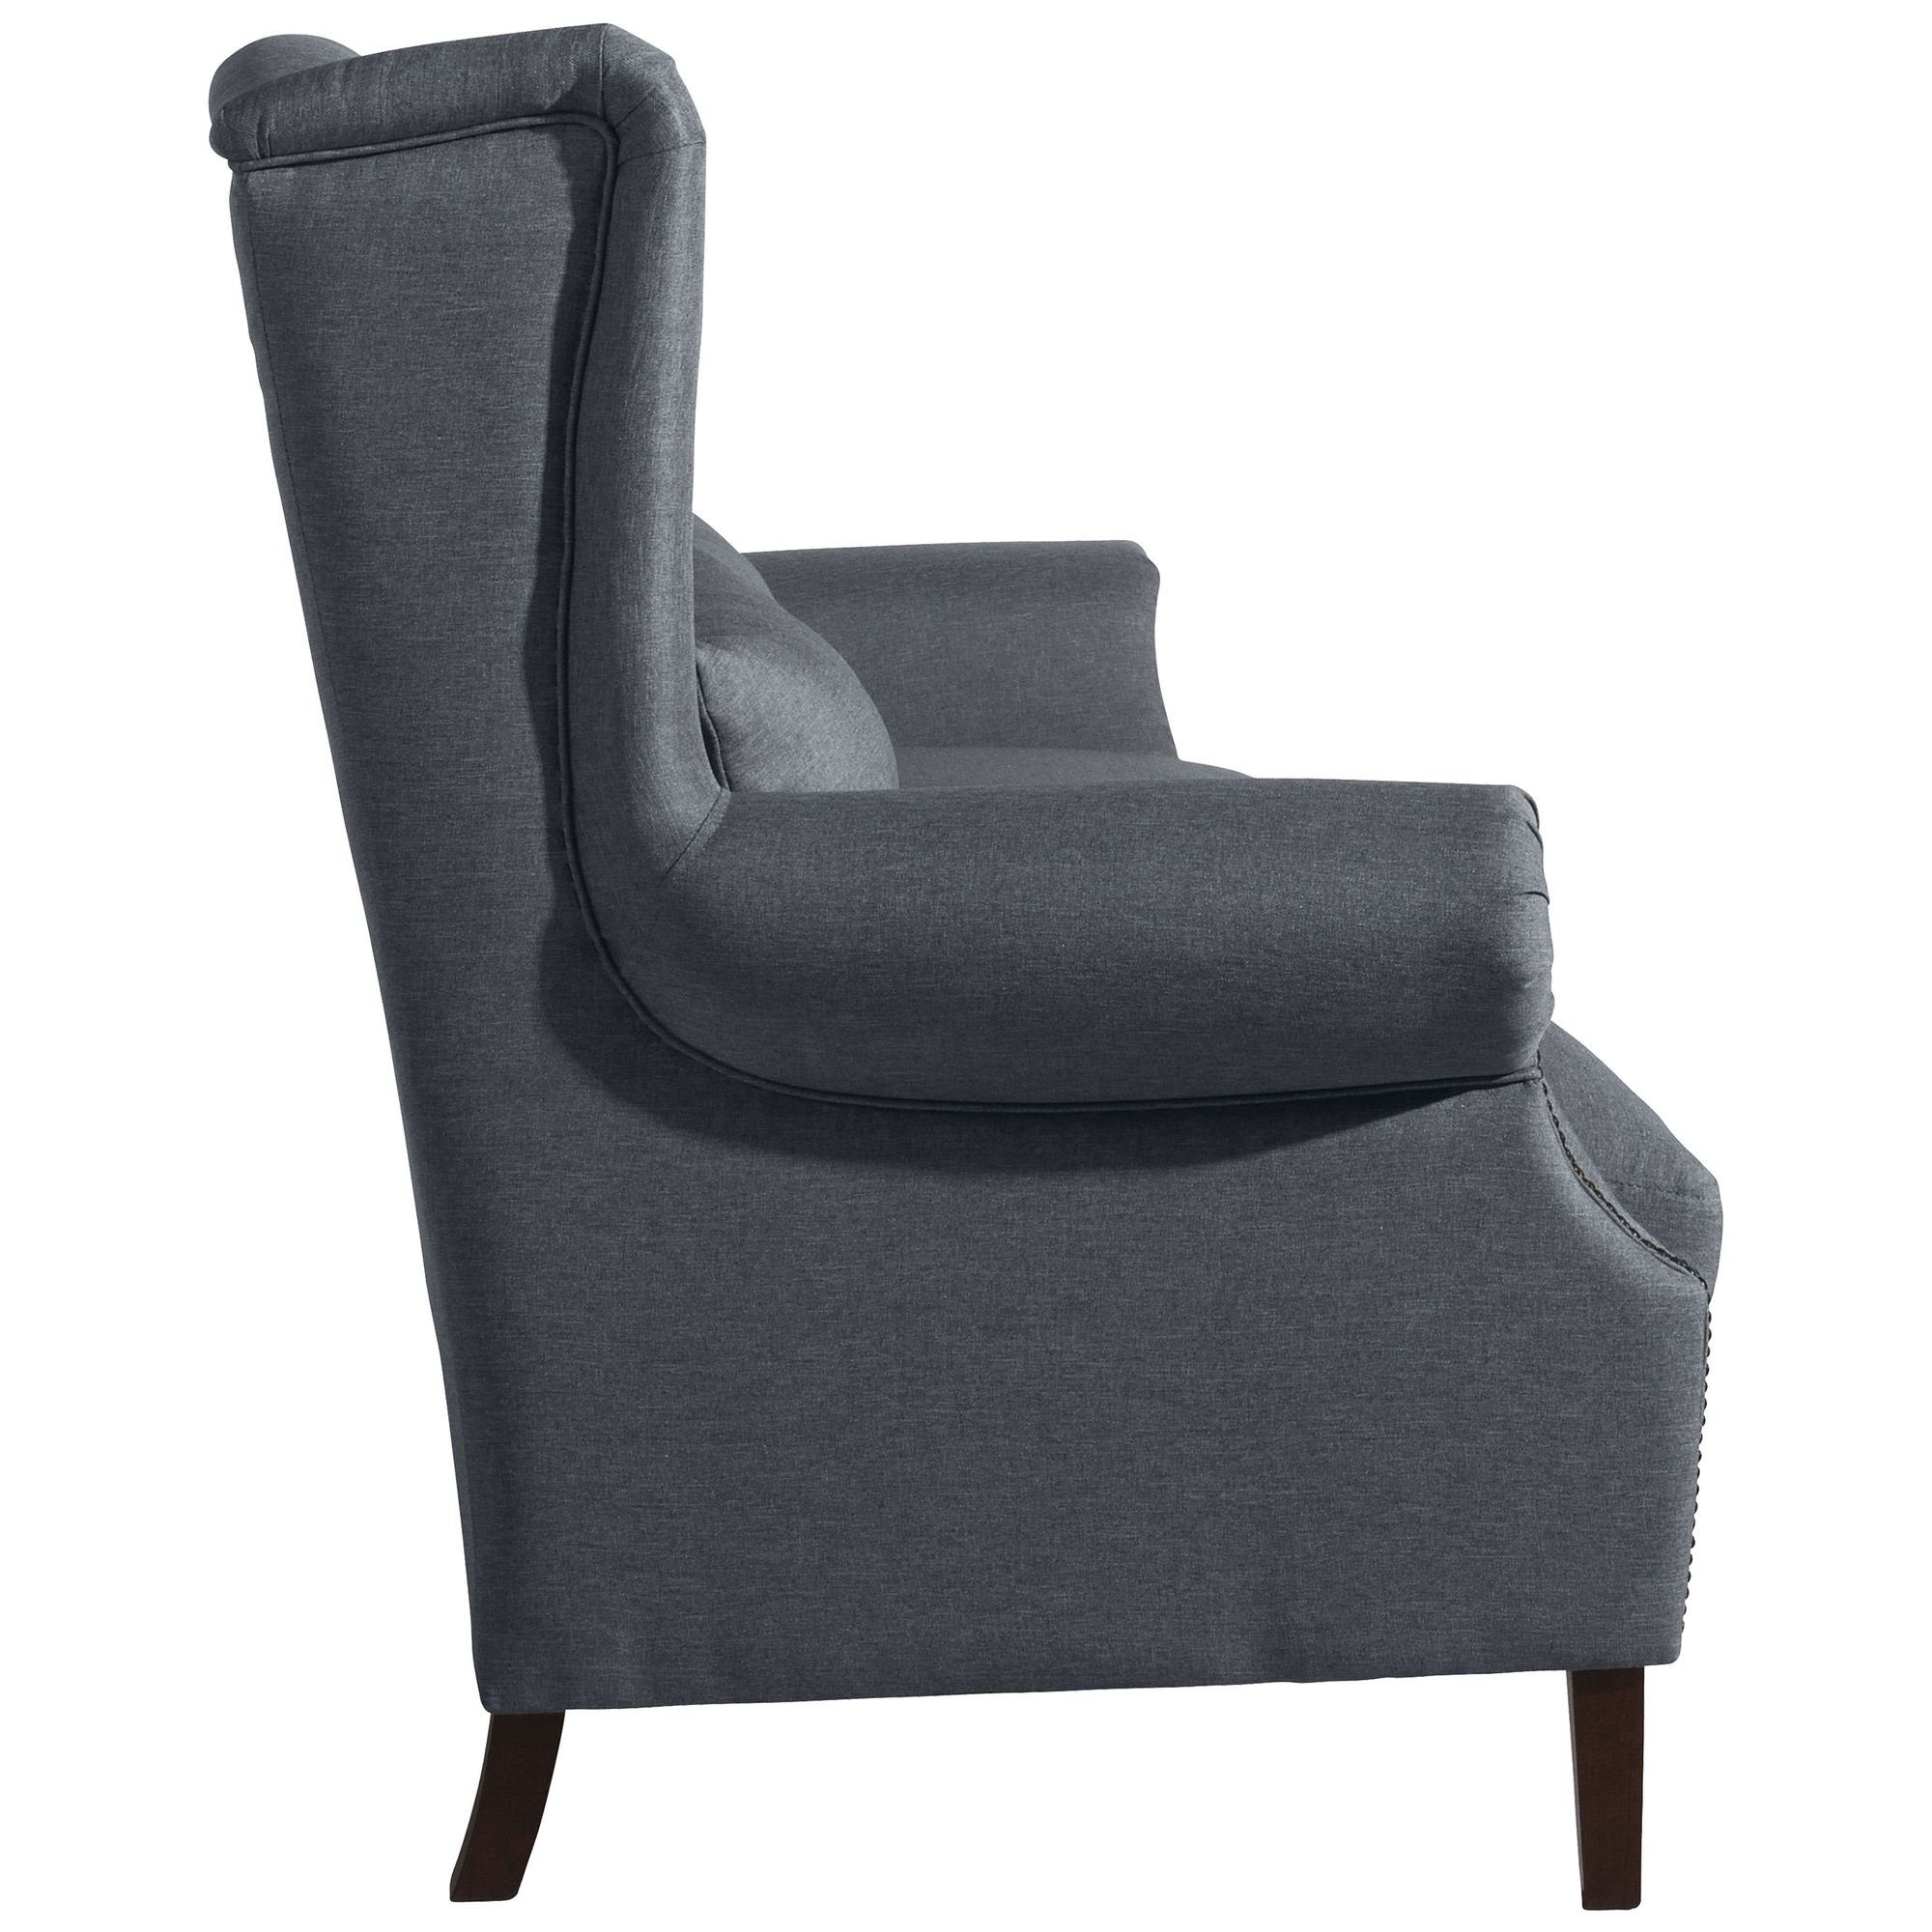 Sparpreis Teile, Sofa Sitz hochwertig Sofa Kandy 1 Flachgewebe, inkl. Kostenlosem aufm (2-geteilt) 3-Sitzer Kessel verarbeitet,bequemer Bezug 58 Versand